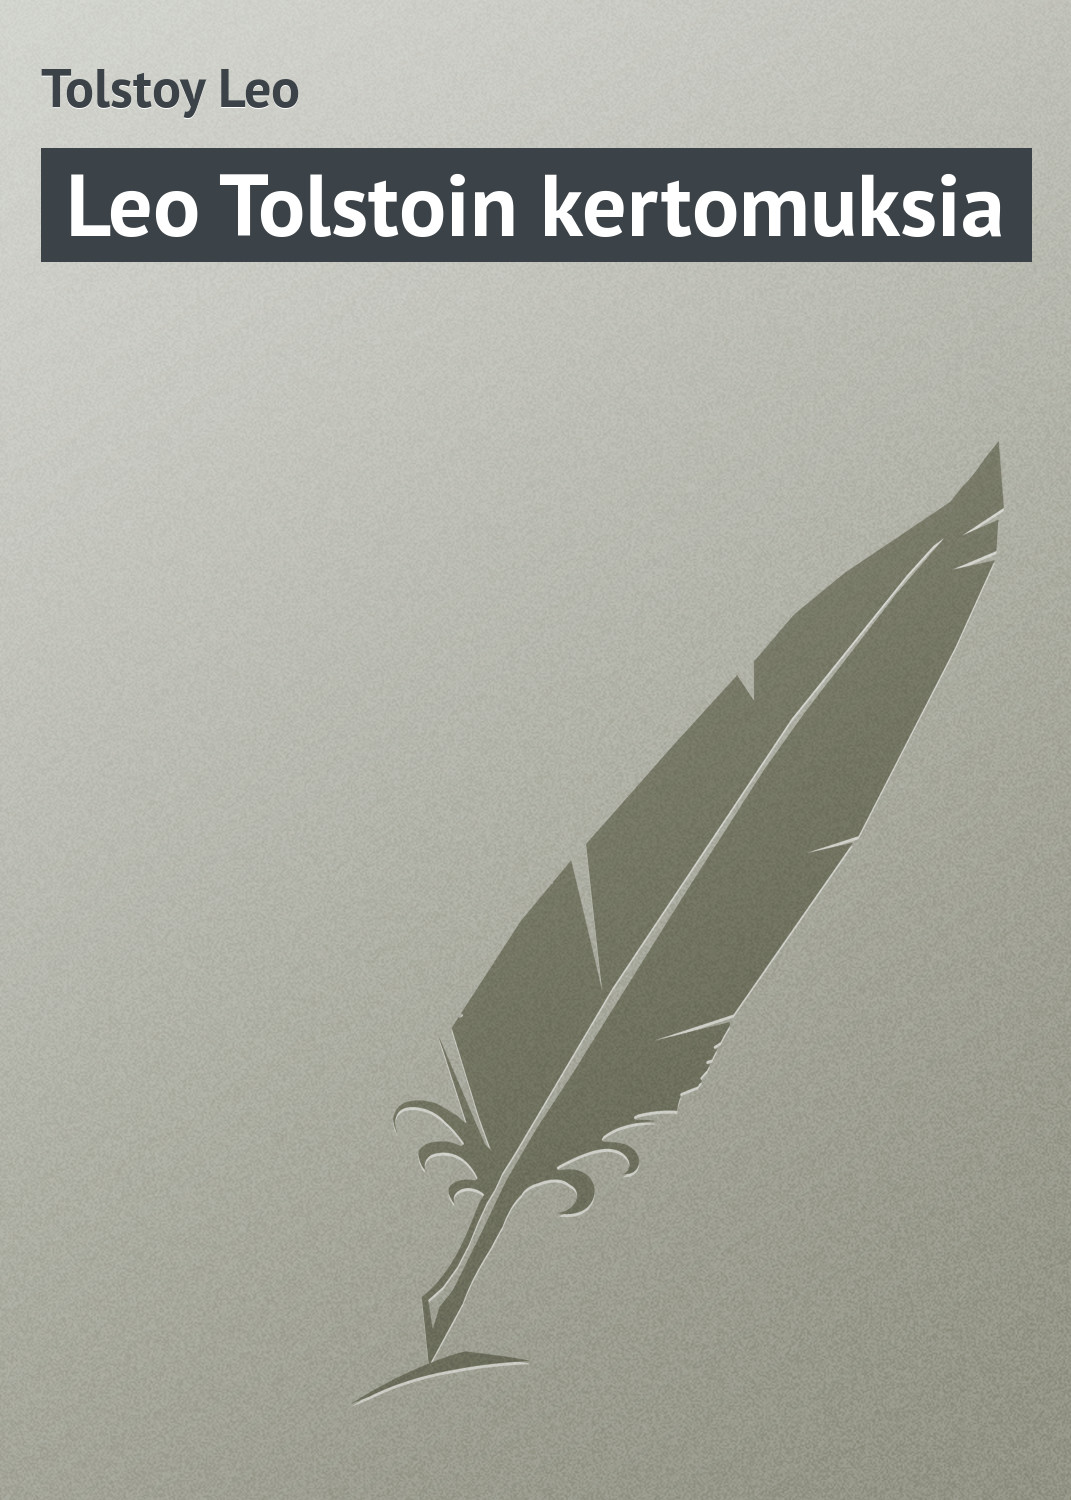 Книга Leo Tolstoin kertomuksia из серии , созданная Leo Tolstoy, может относится к жанру Русская классика. Стоимость электронной книги Leo Tolstoin kertomuksia с идентификатором 23169043 составляет 5.99 руб.